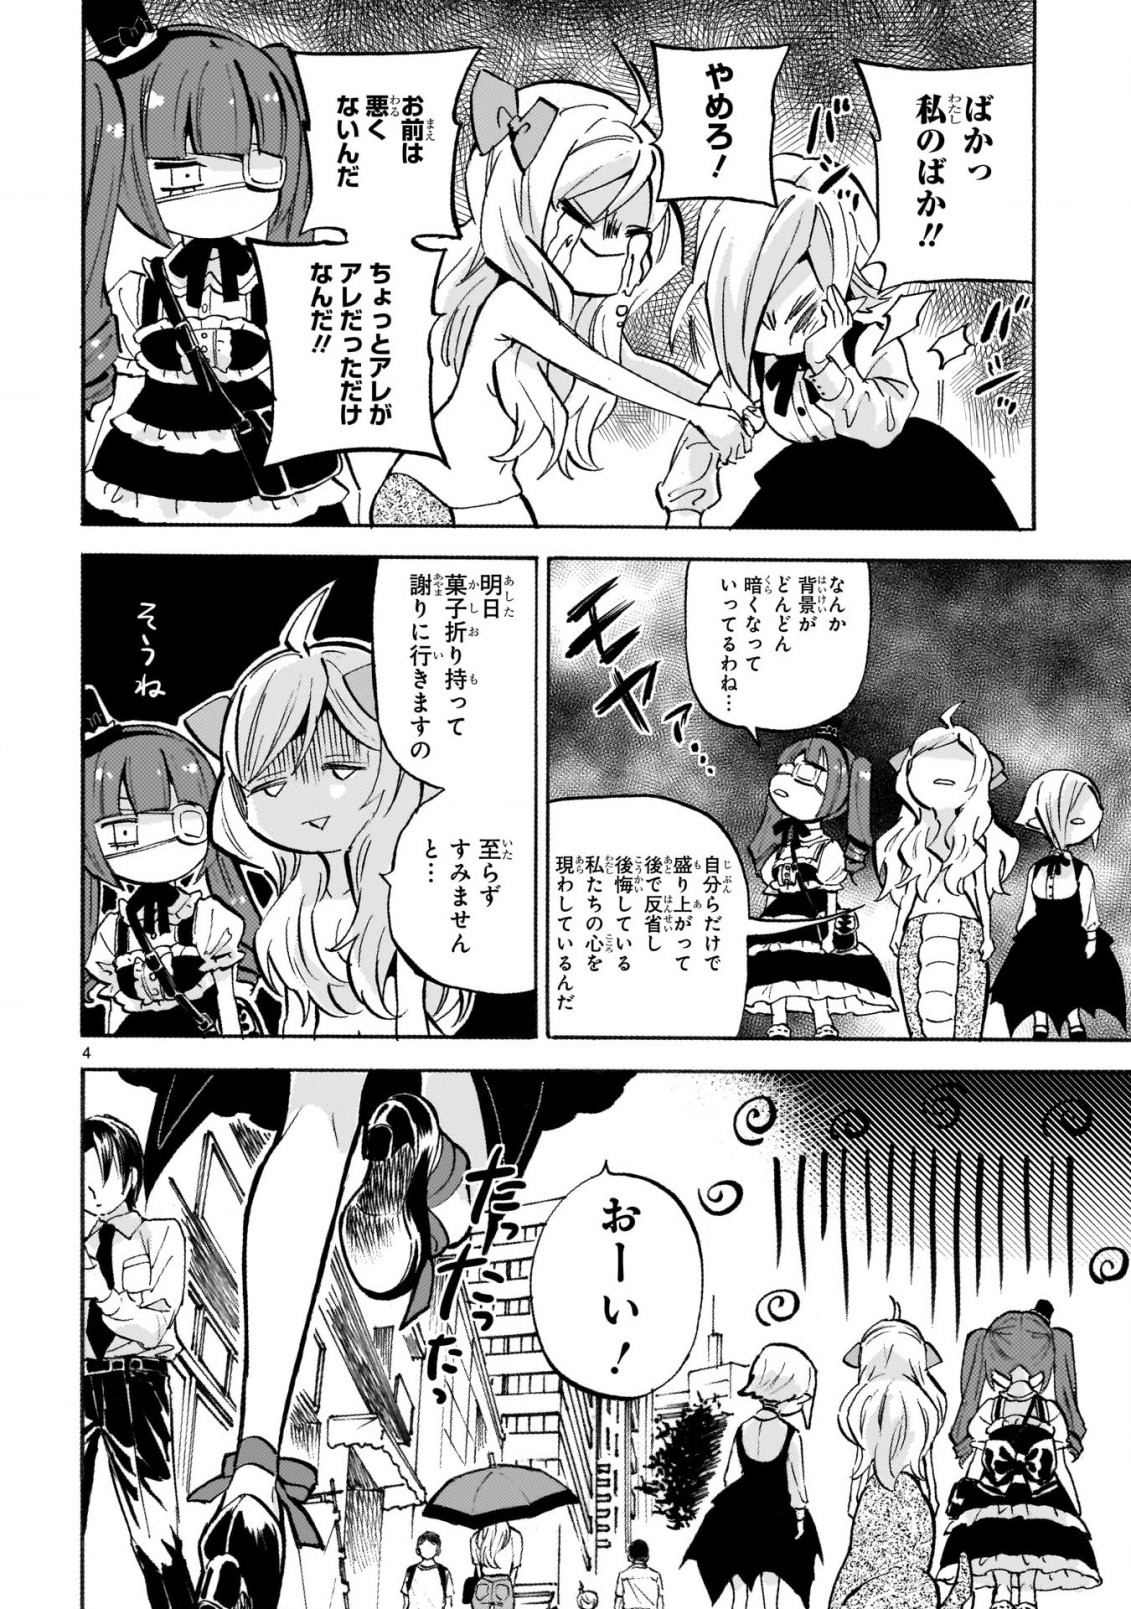 Jashin-chan Dropkick - Chapter 237 - Page 4